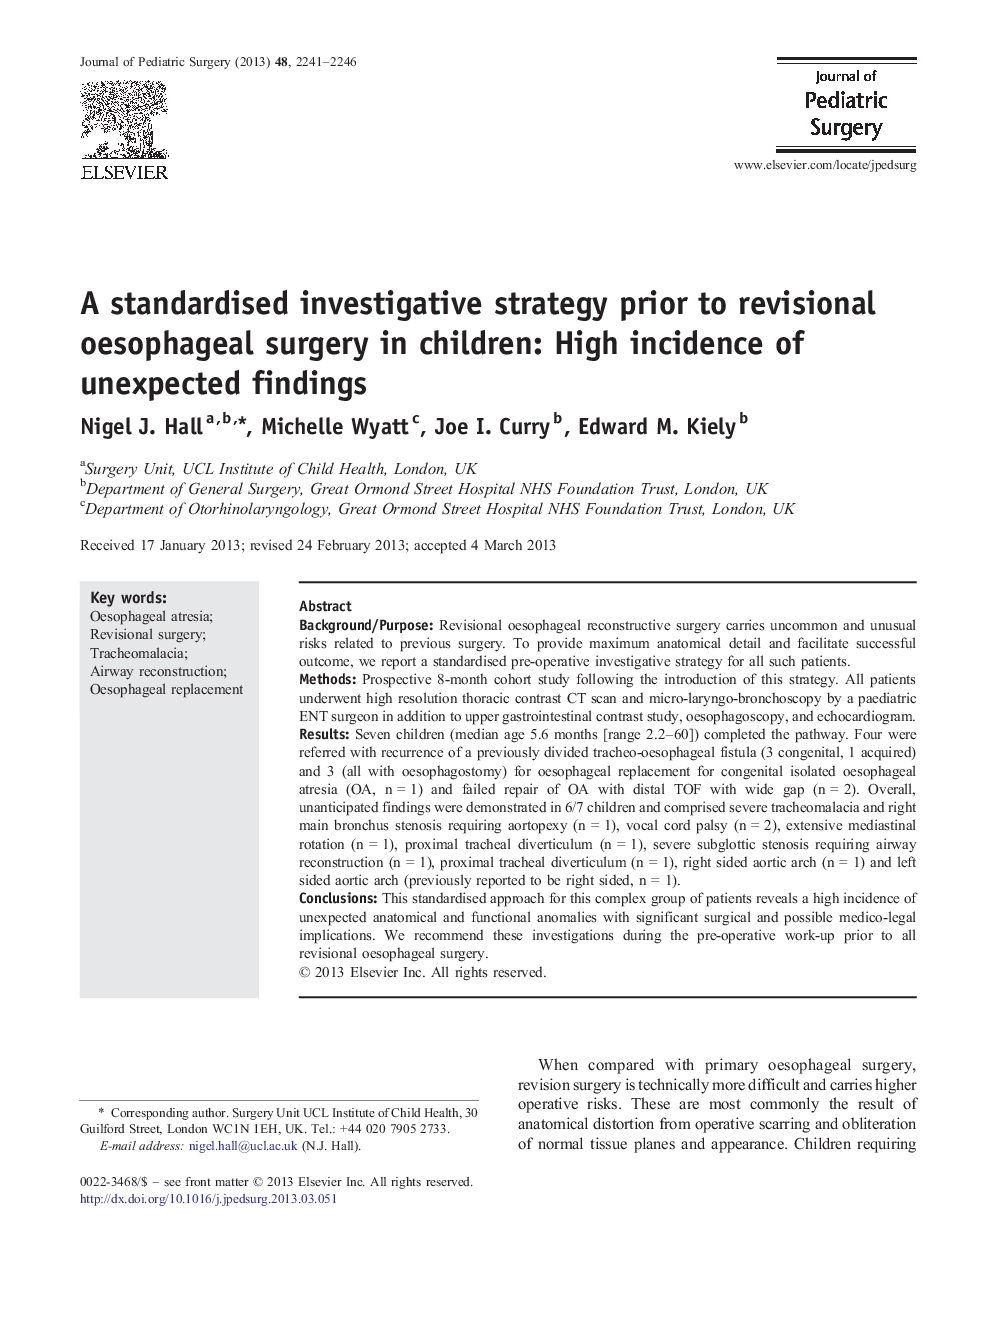 یک استراتژی تحقیق استاندارد قبل از عمل جراحی بازاریابی در کودکان: میزان بالای یافته های غیر منتظره 